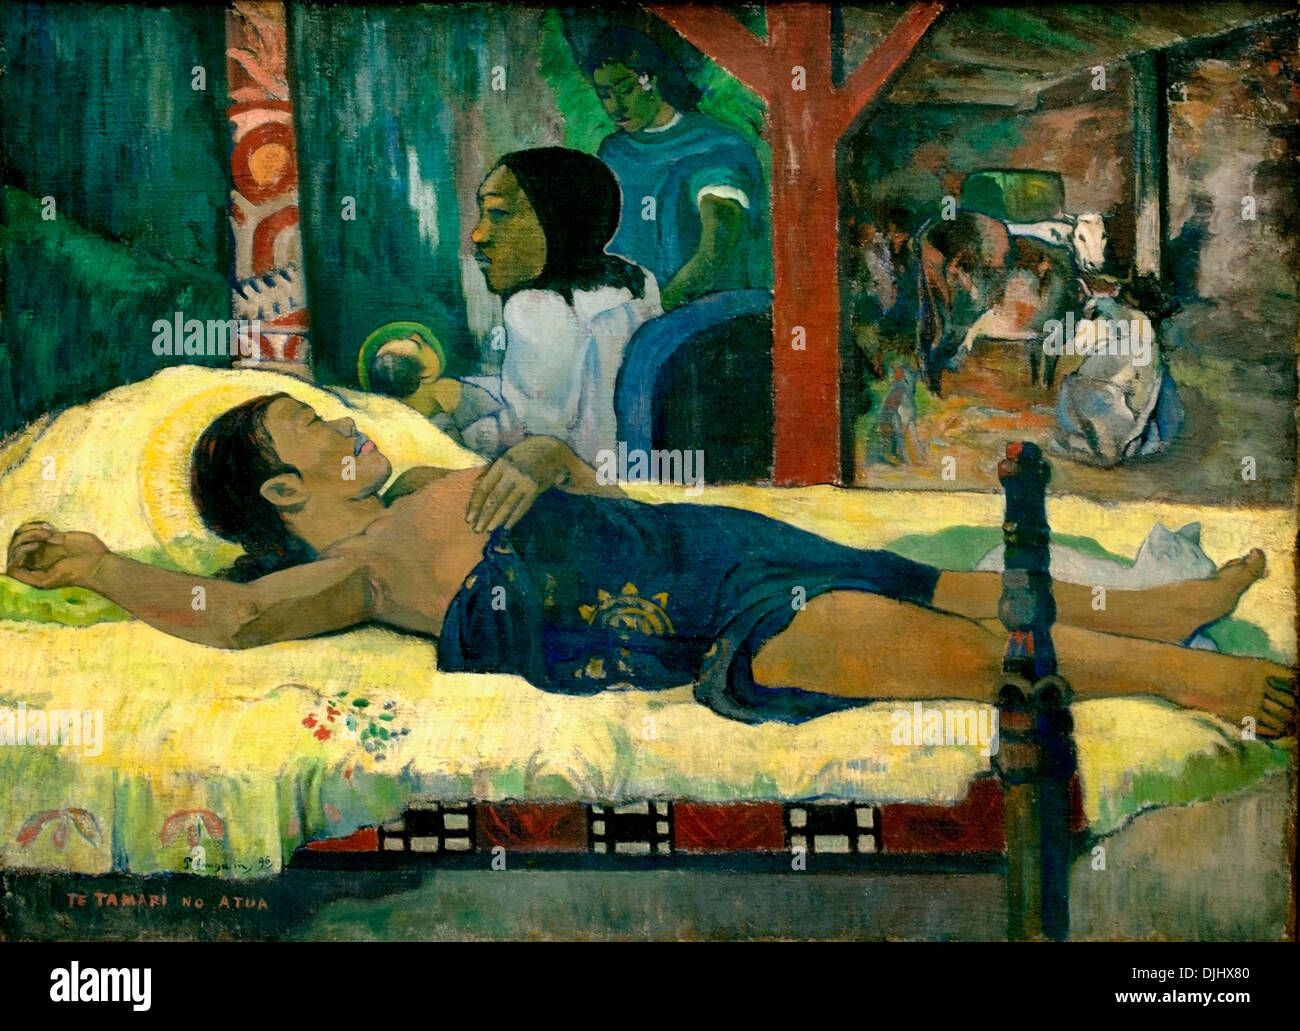 La naissance - PAS DE TAMARI TE ATUA (1896) Paul Gauguin (1848-1903) France Banque D'Images